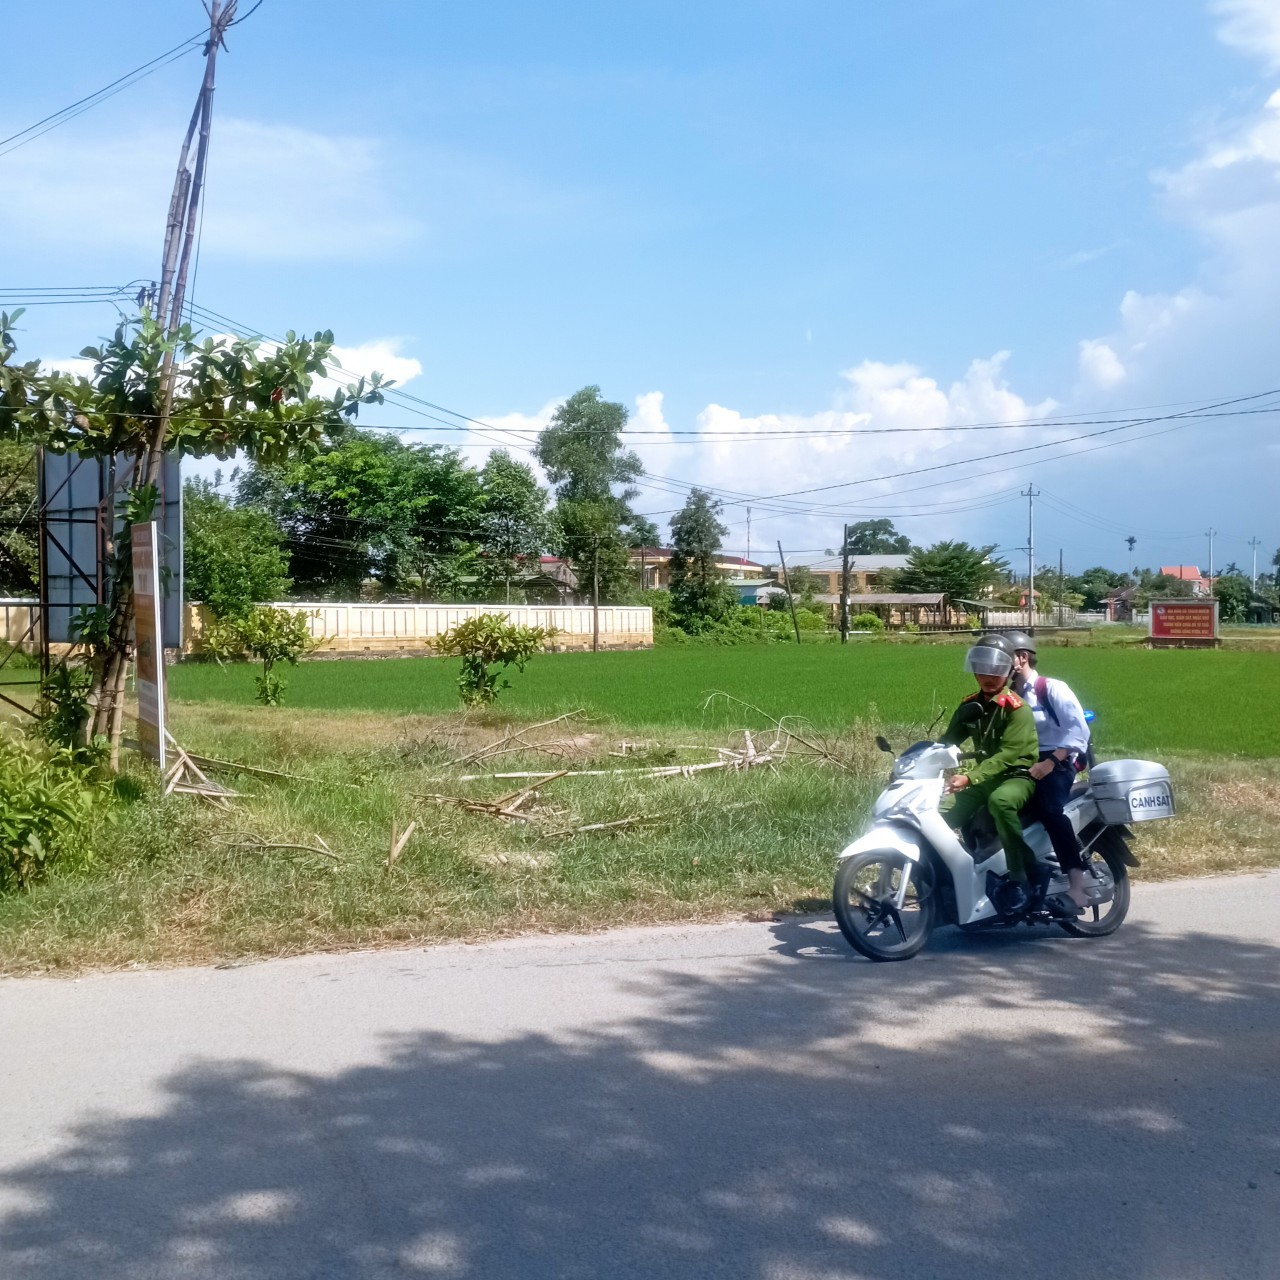 Đại úy Phạm Thành Nam - Trưởng công an xã Phong Bình - tức tốc chạy 8km đến nhà chở thí sinh đến điểm thi trường THPT Trần Văn Kỷ